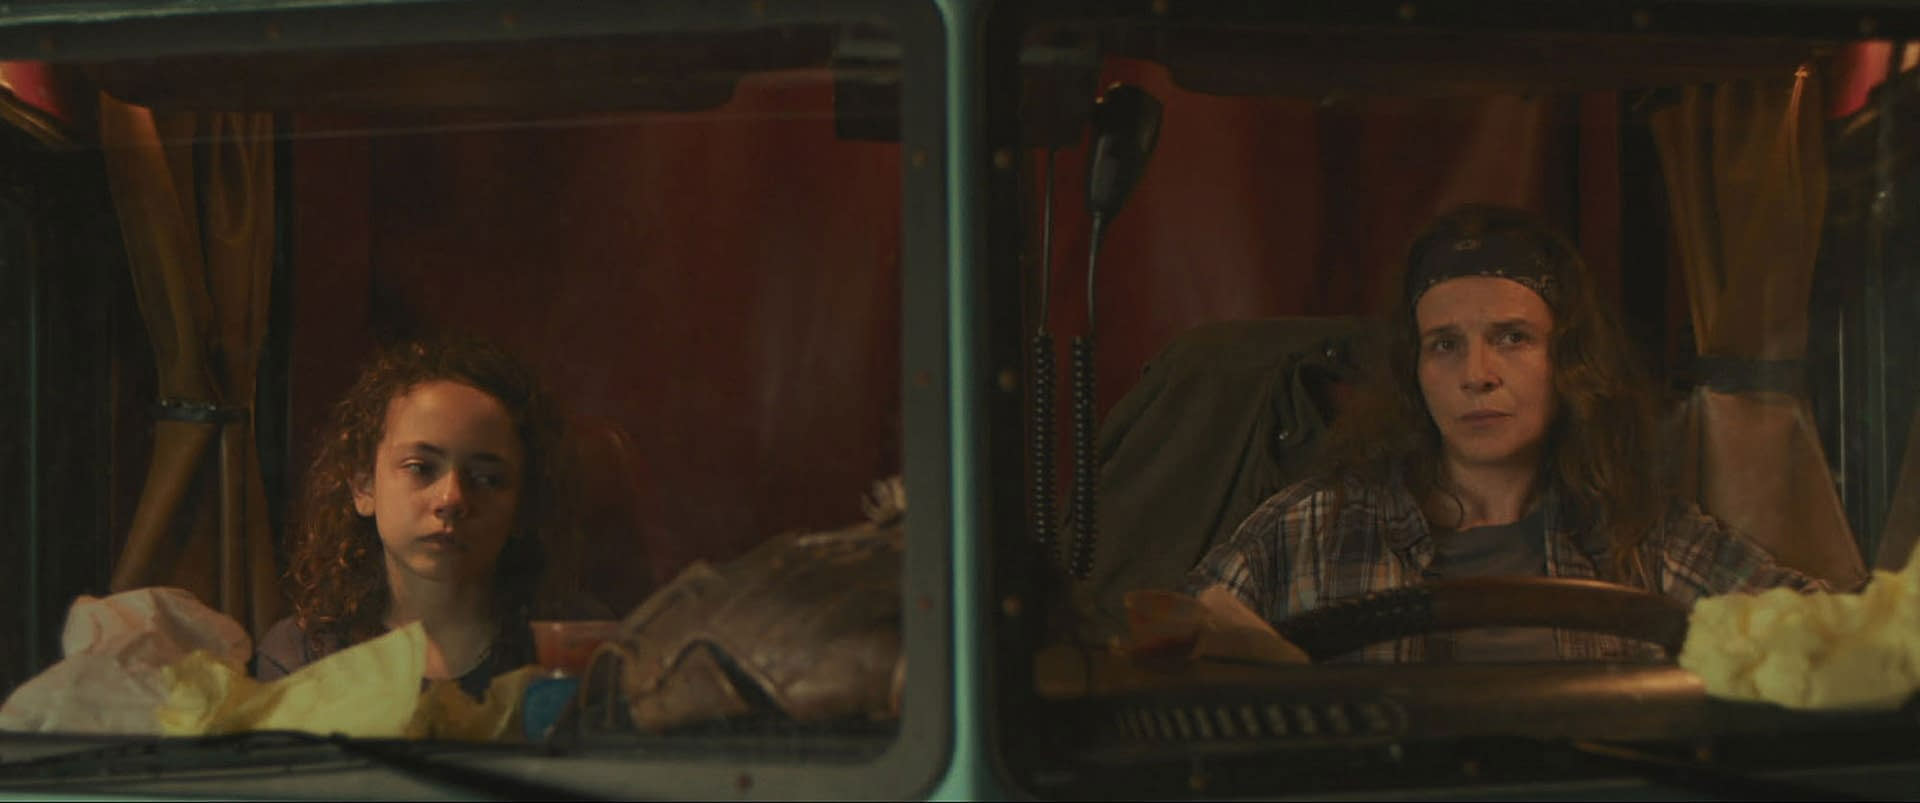 ژولیت بینوش پشت فرمان یک کامیون در کنار هالا فینلی در صحنه‌ای از فیلم بزرگراه بهشت